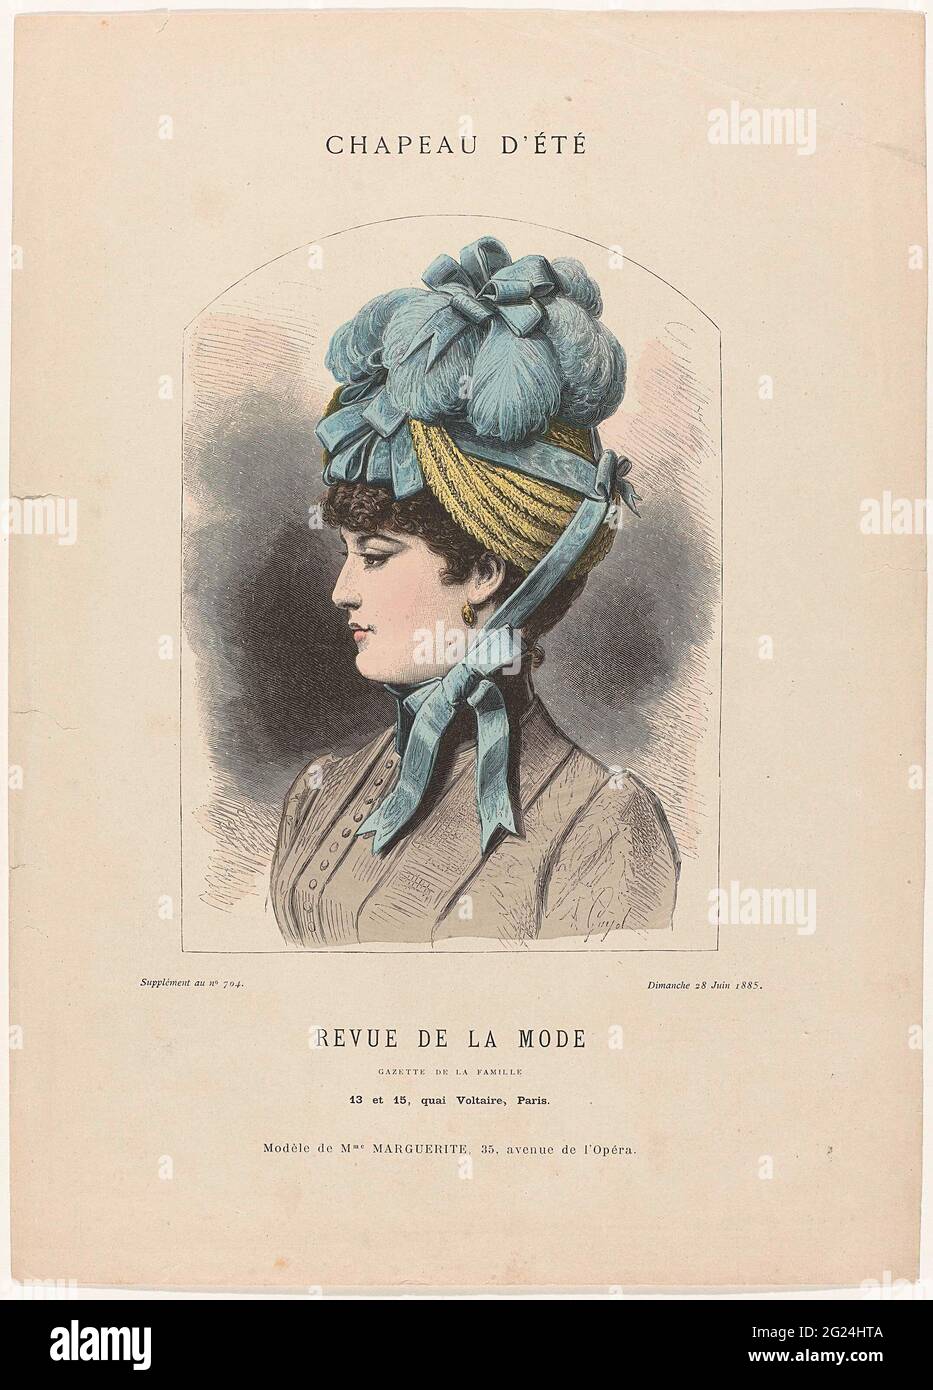 Revue de la fashion, Gazette de la Famille, Dimanche 28 Juin 1885,  Supplément No. 704: Chapeau d'Eté (...). Woman head with a summer hat from  'Paille d'Italie' decorated with sky-blue feathers and